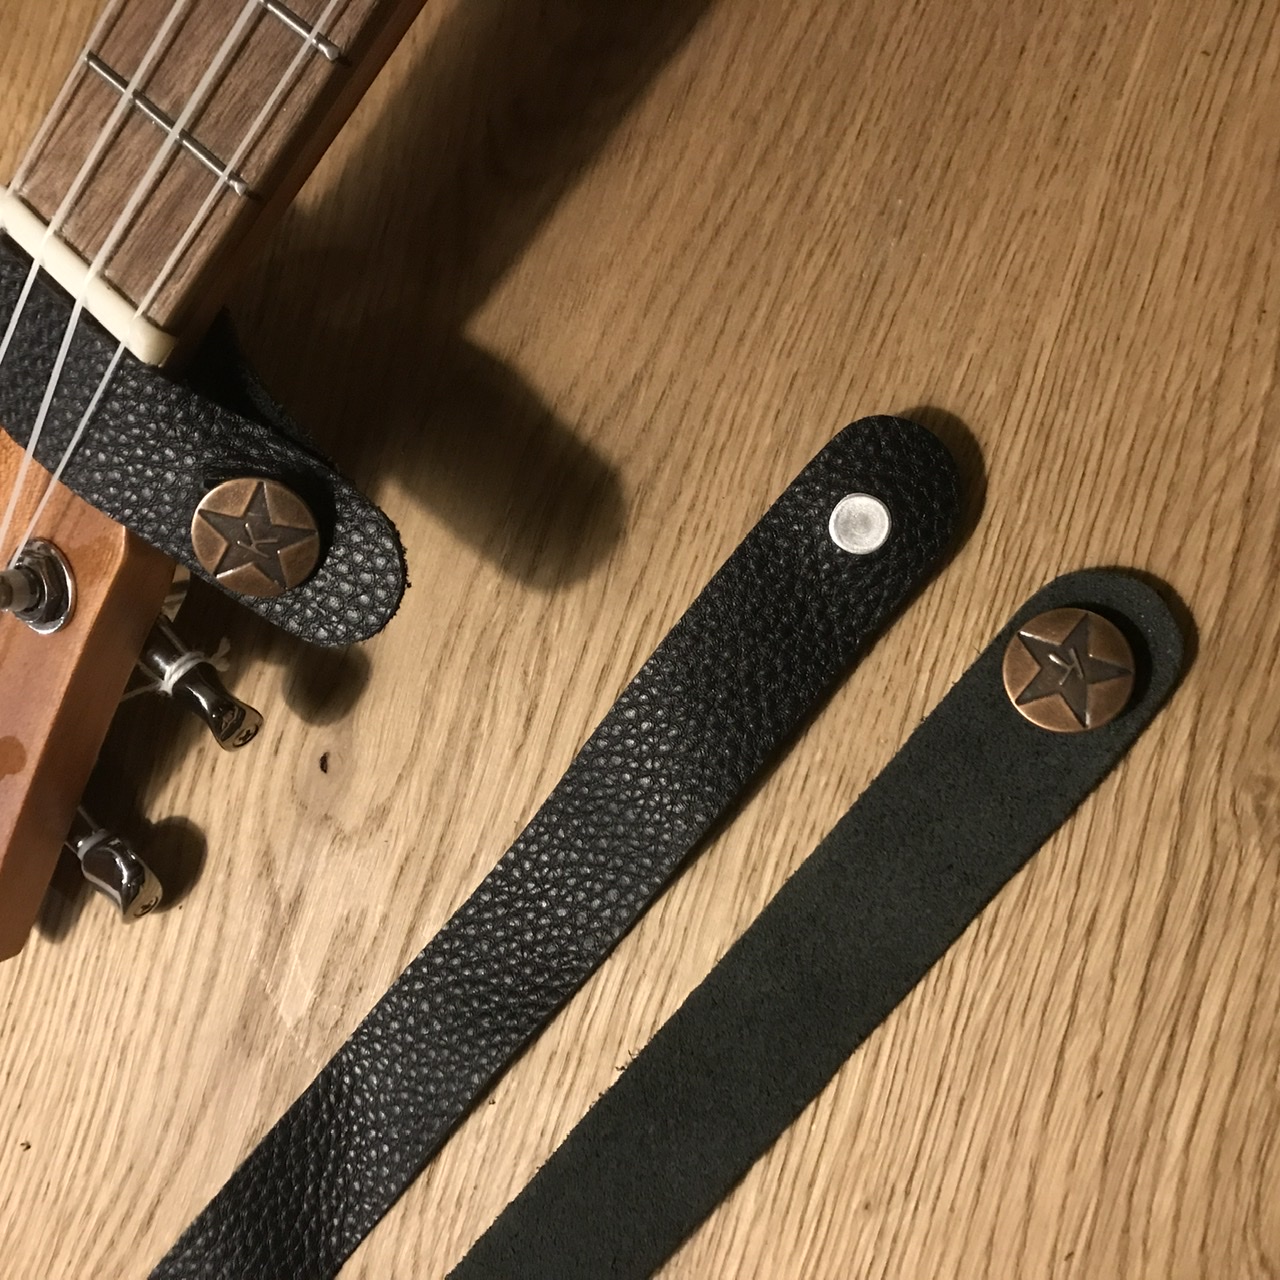 Riempje ukulelestrap bevestiging